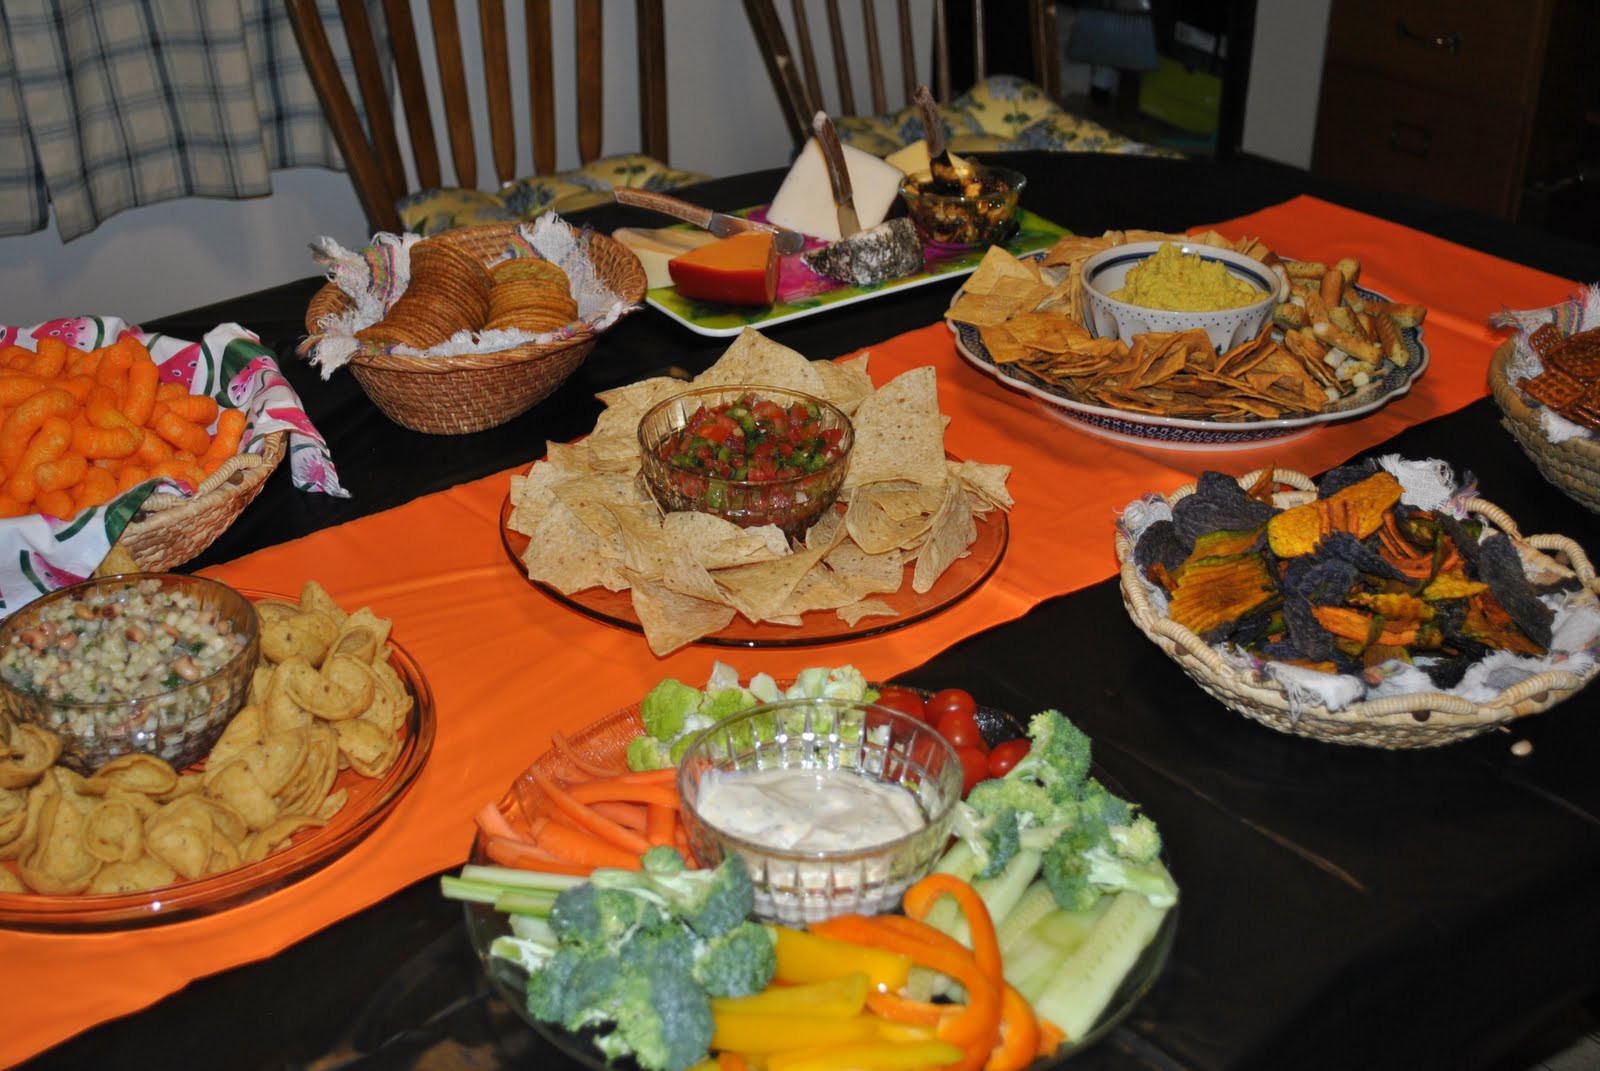 Food Ideas For A Graduation Party
 Domestic Congrats grad